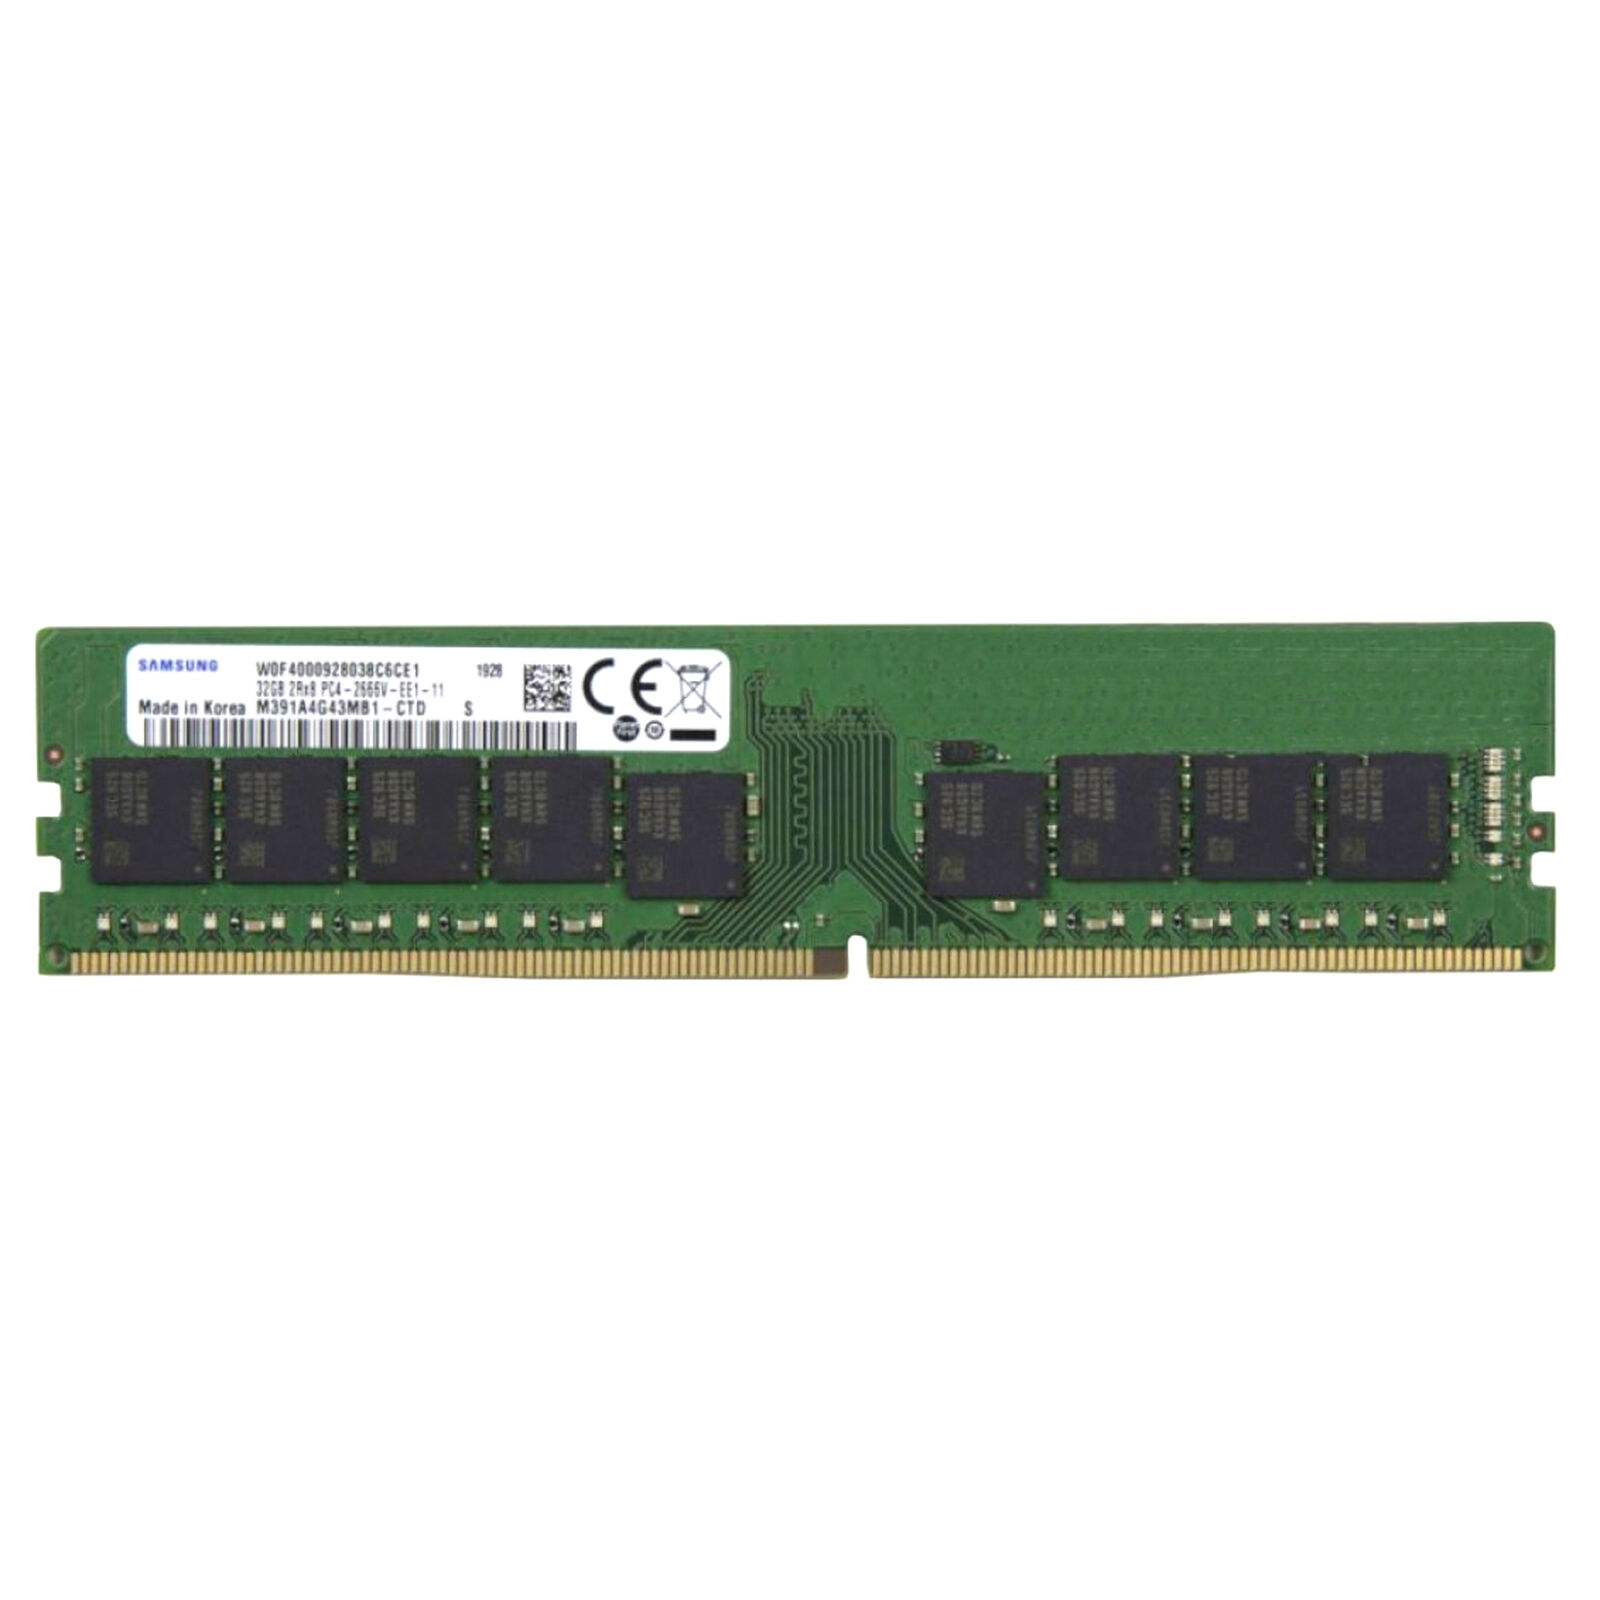 Samsung 32GB 2666MHz DDR4 ECC Unbuffered DIMM RAM PC4-21300 2Rx8